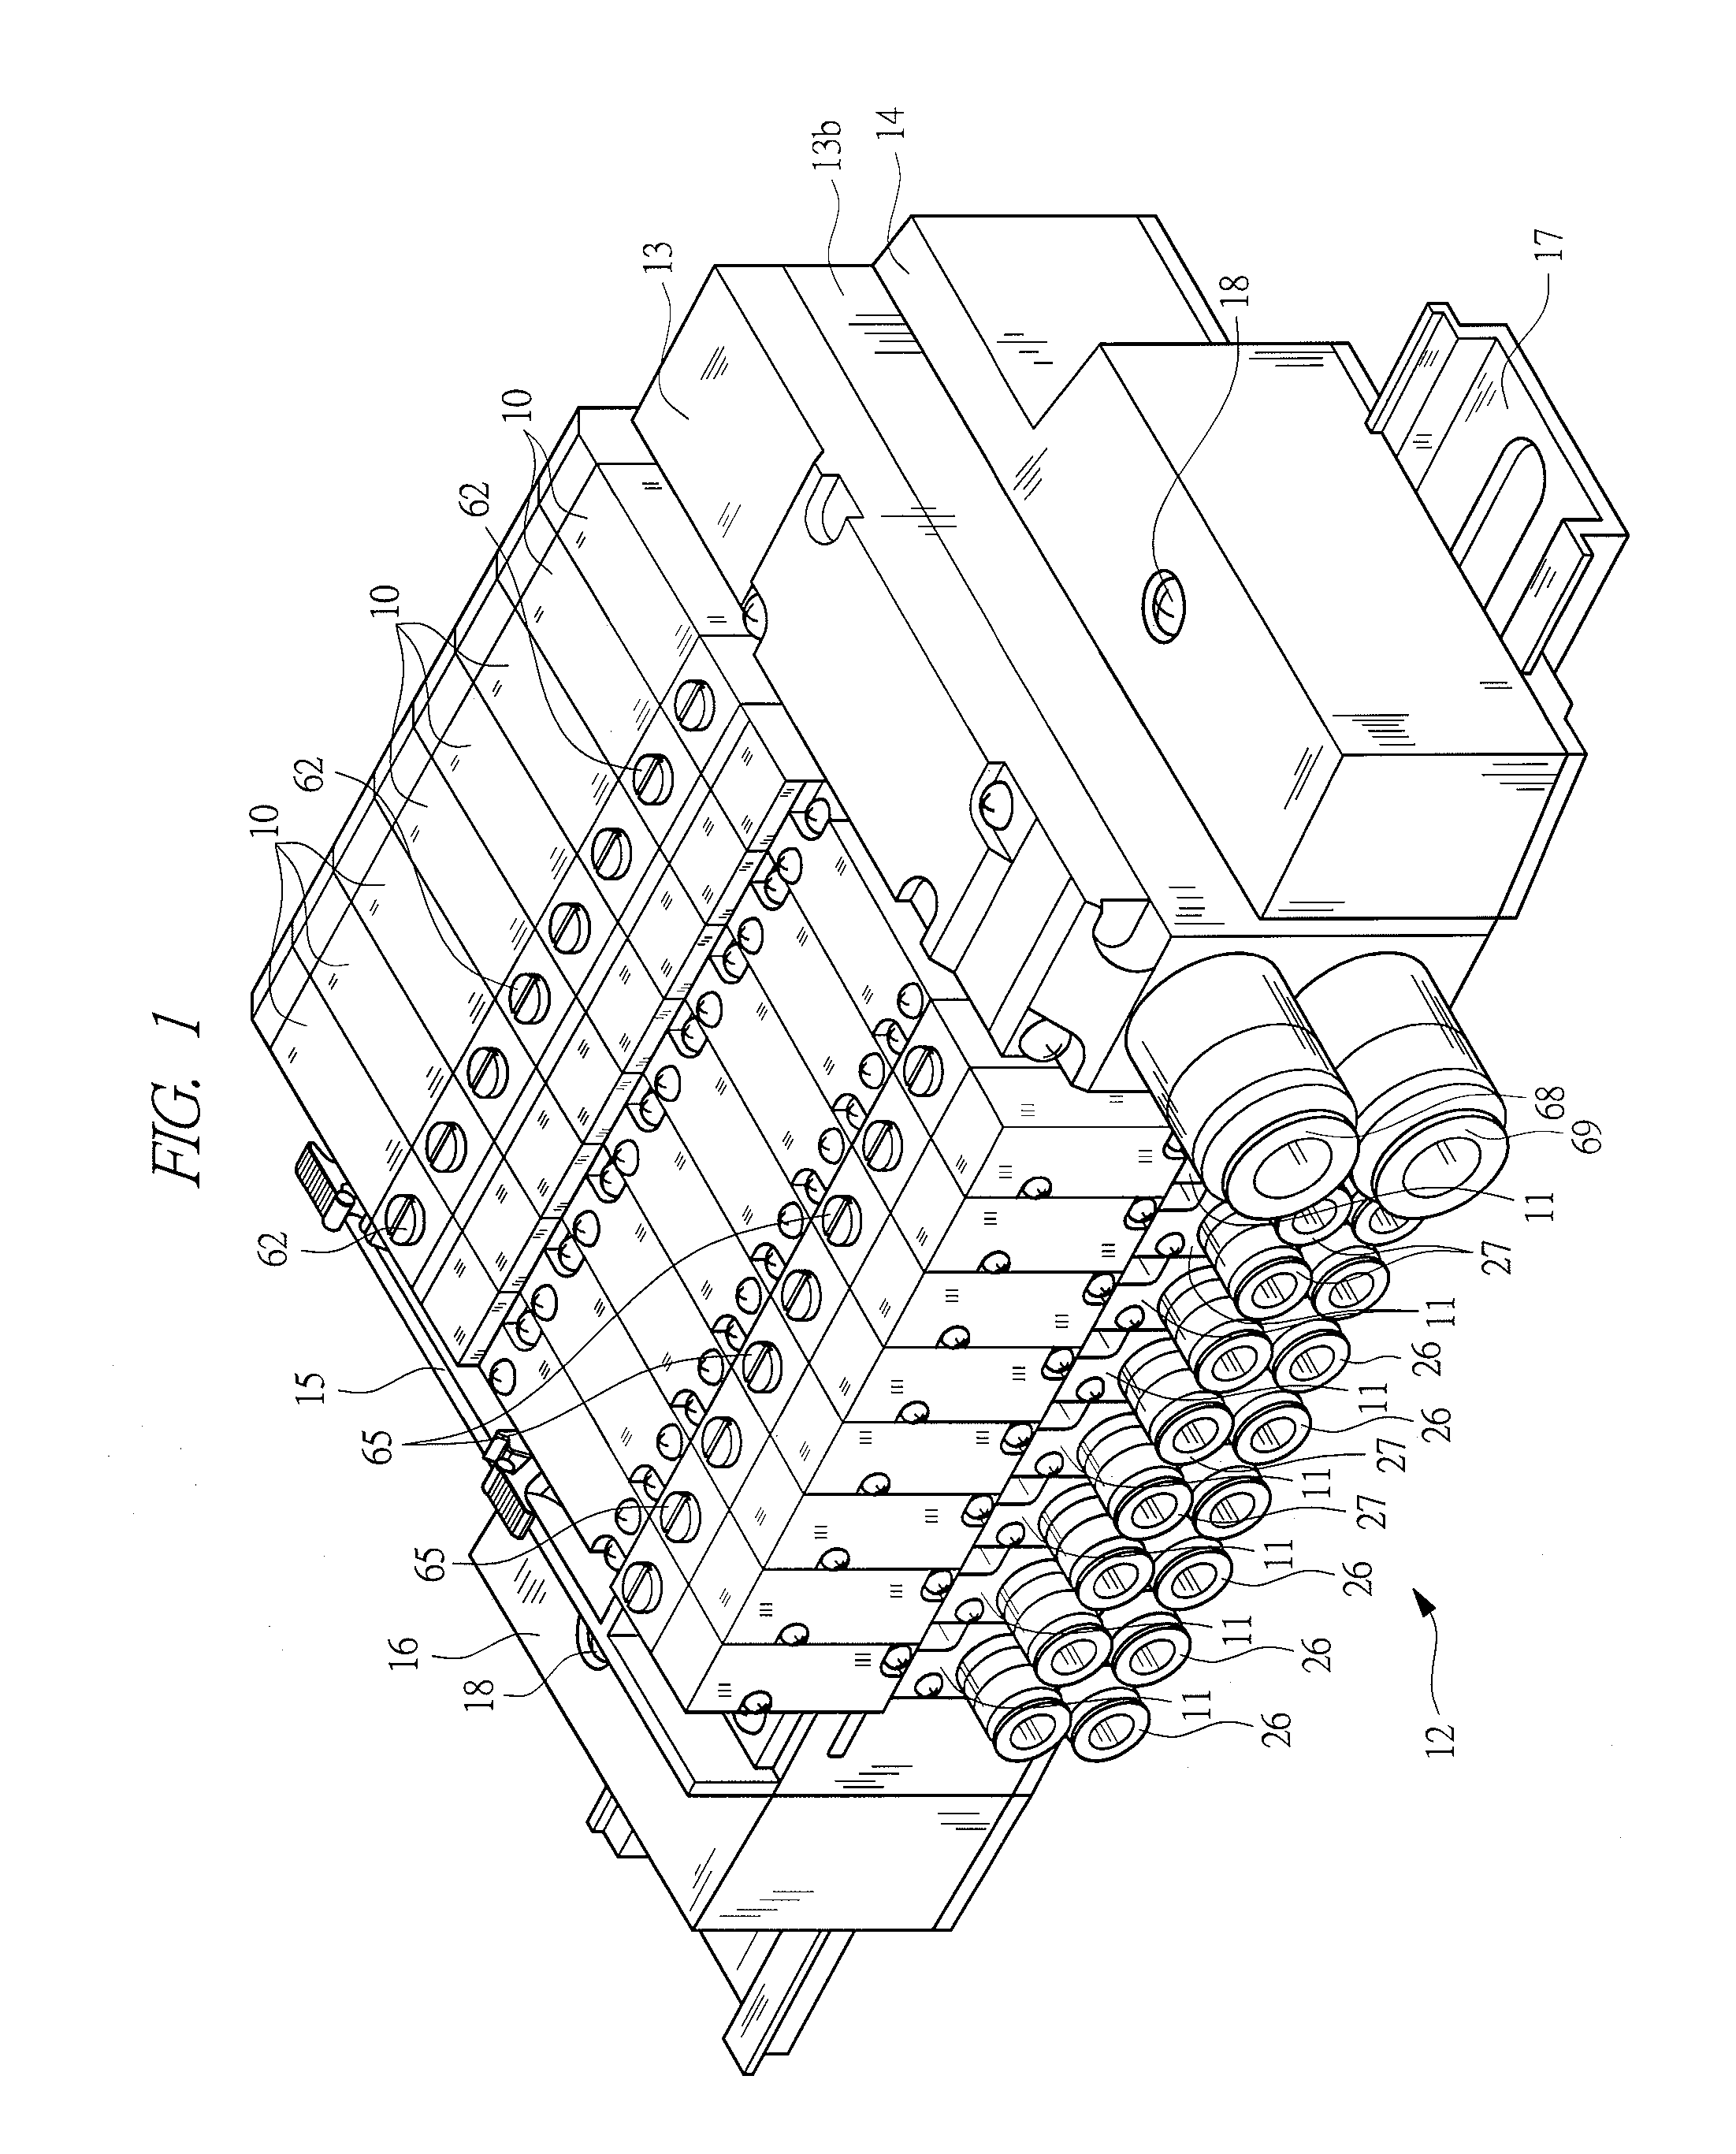 Manifold solenoid valve